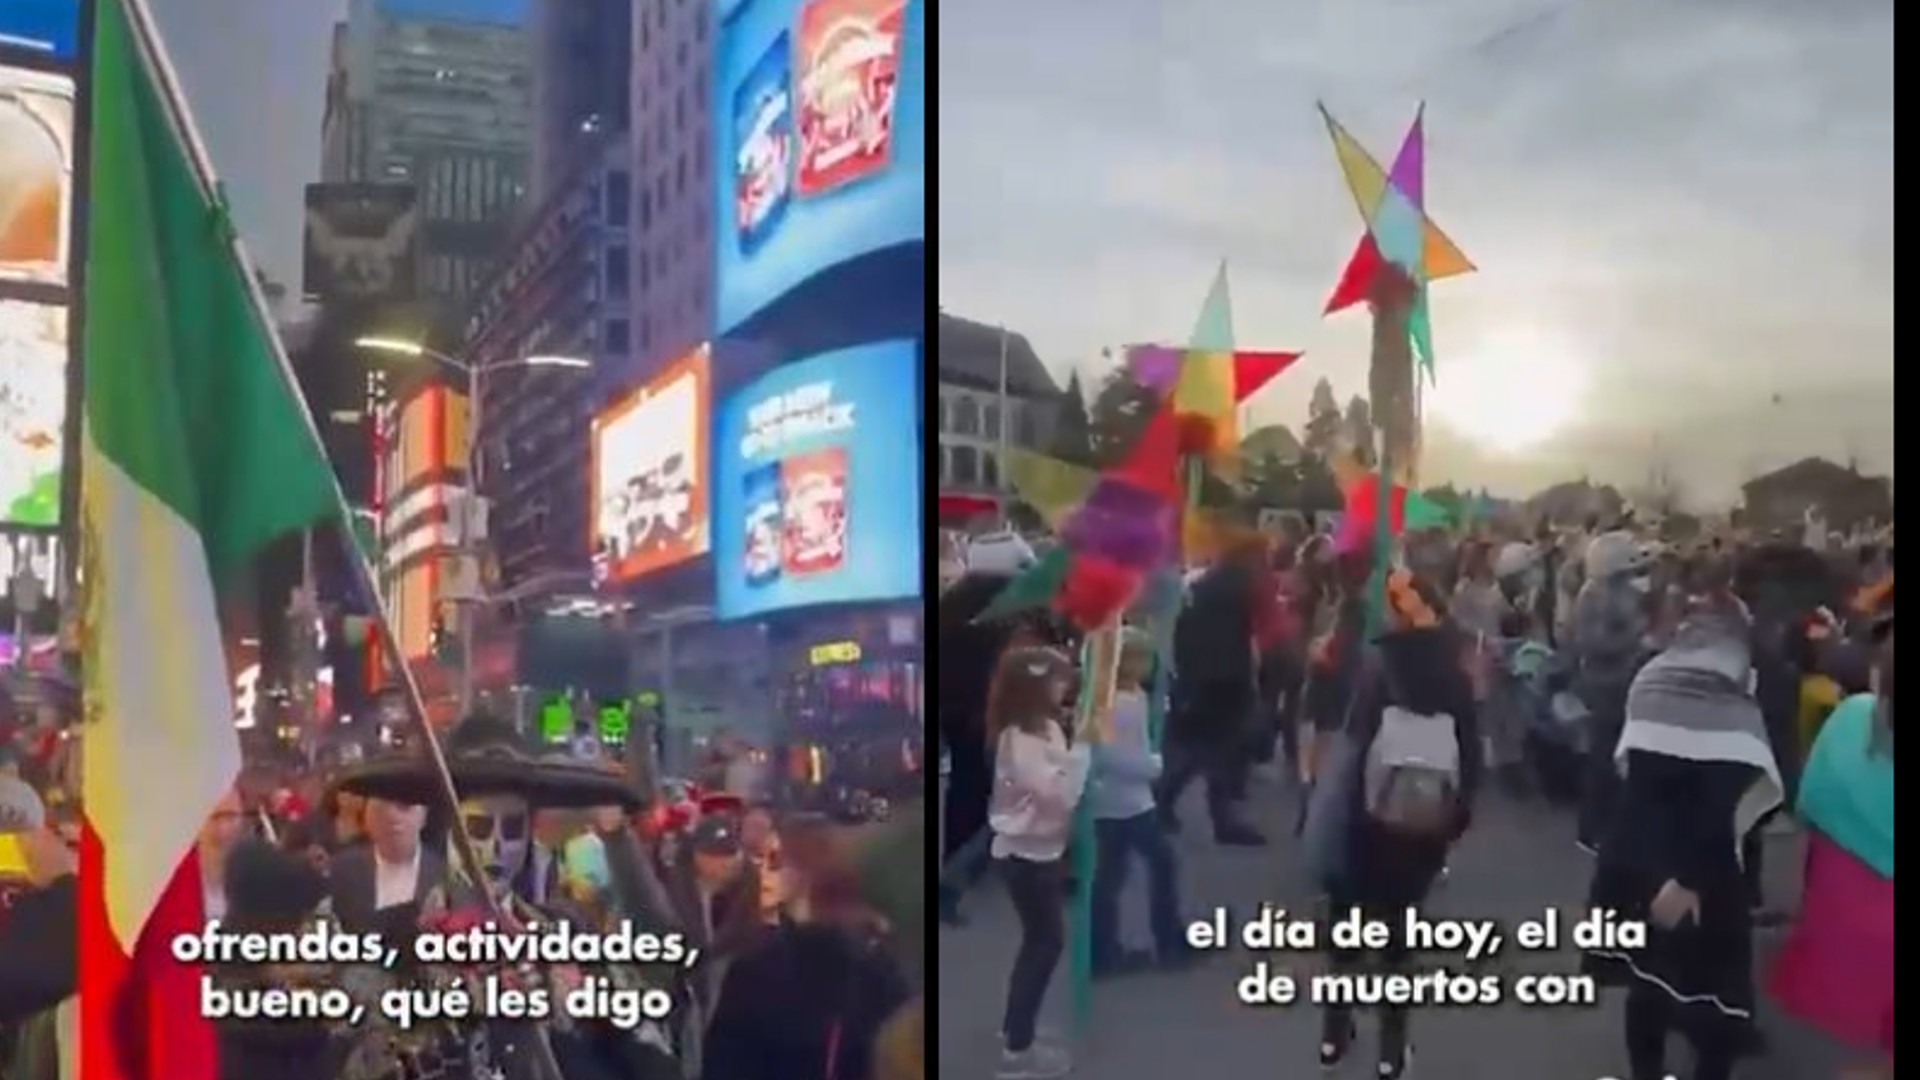 De Nueva York a Shanghái, así se celebró el Día de Muertos con “influencia mexicana” en el mundo